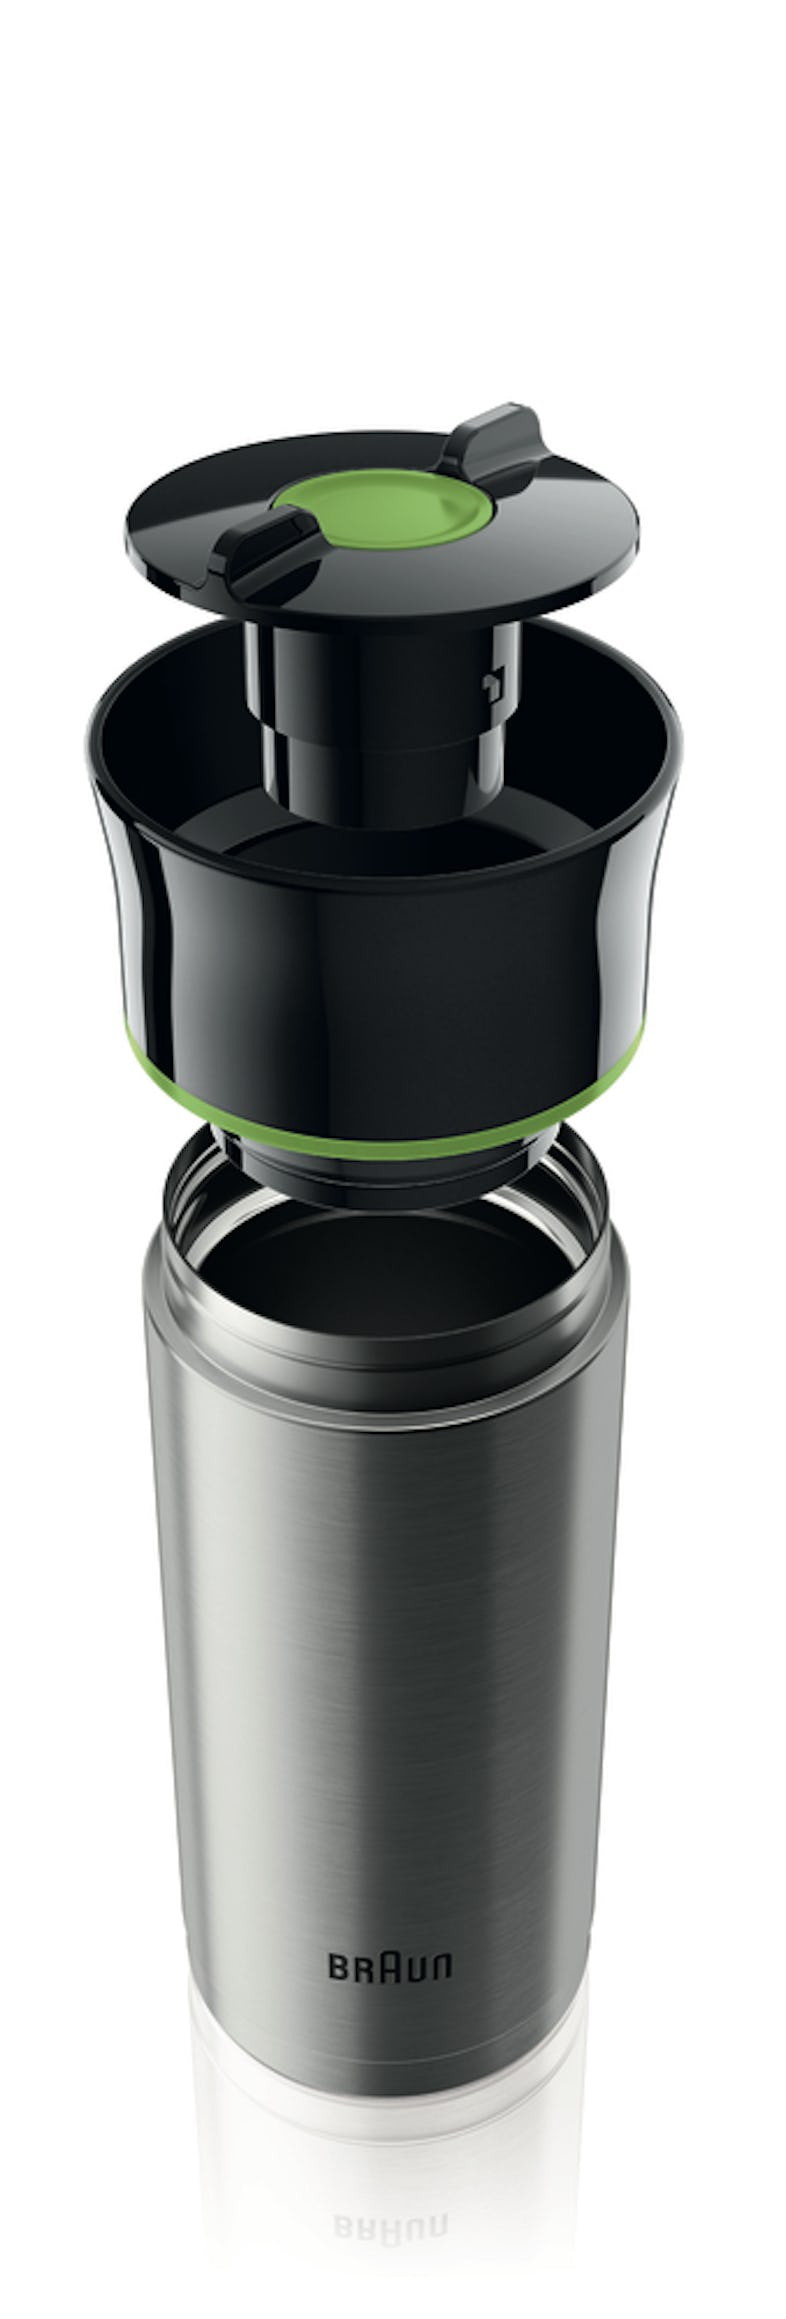 KF Tassen-Aroma-Kanne Filterkaffeemaschine Braun METRO | 7020, 12 Marktplatz